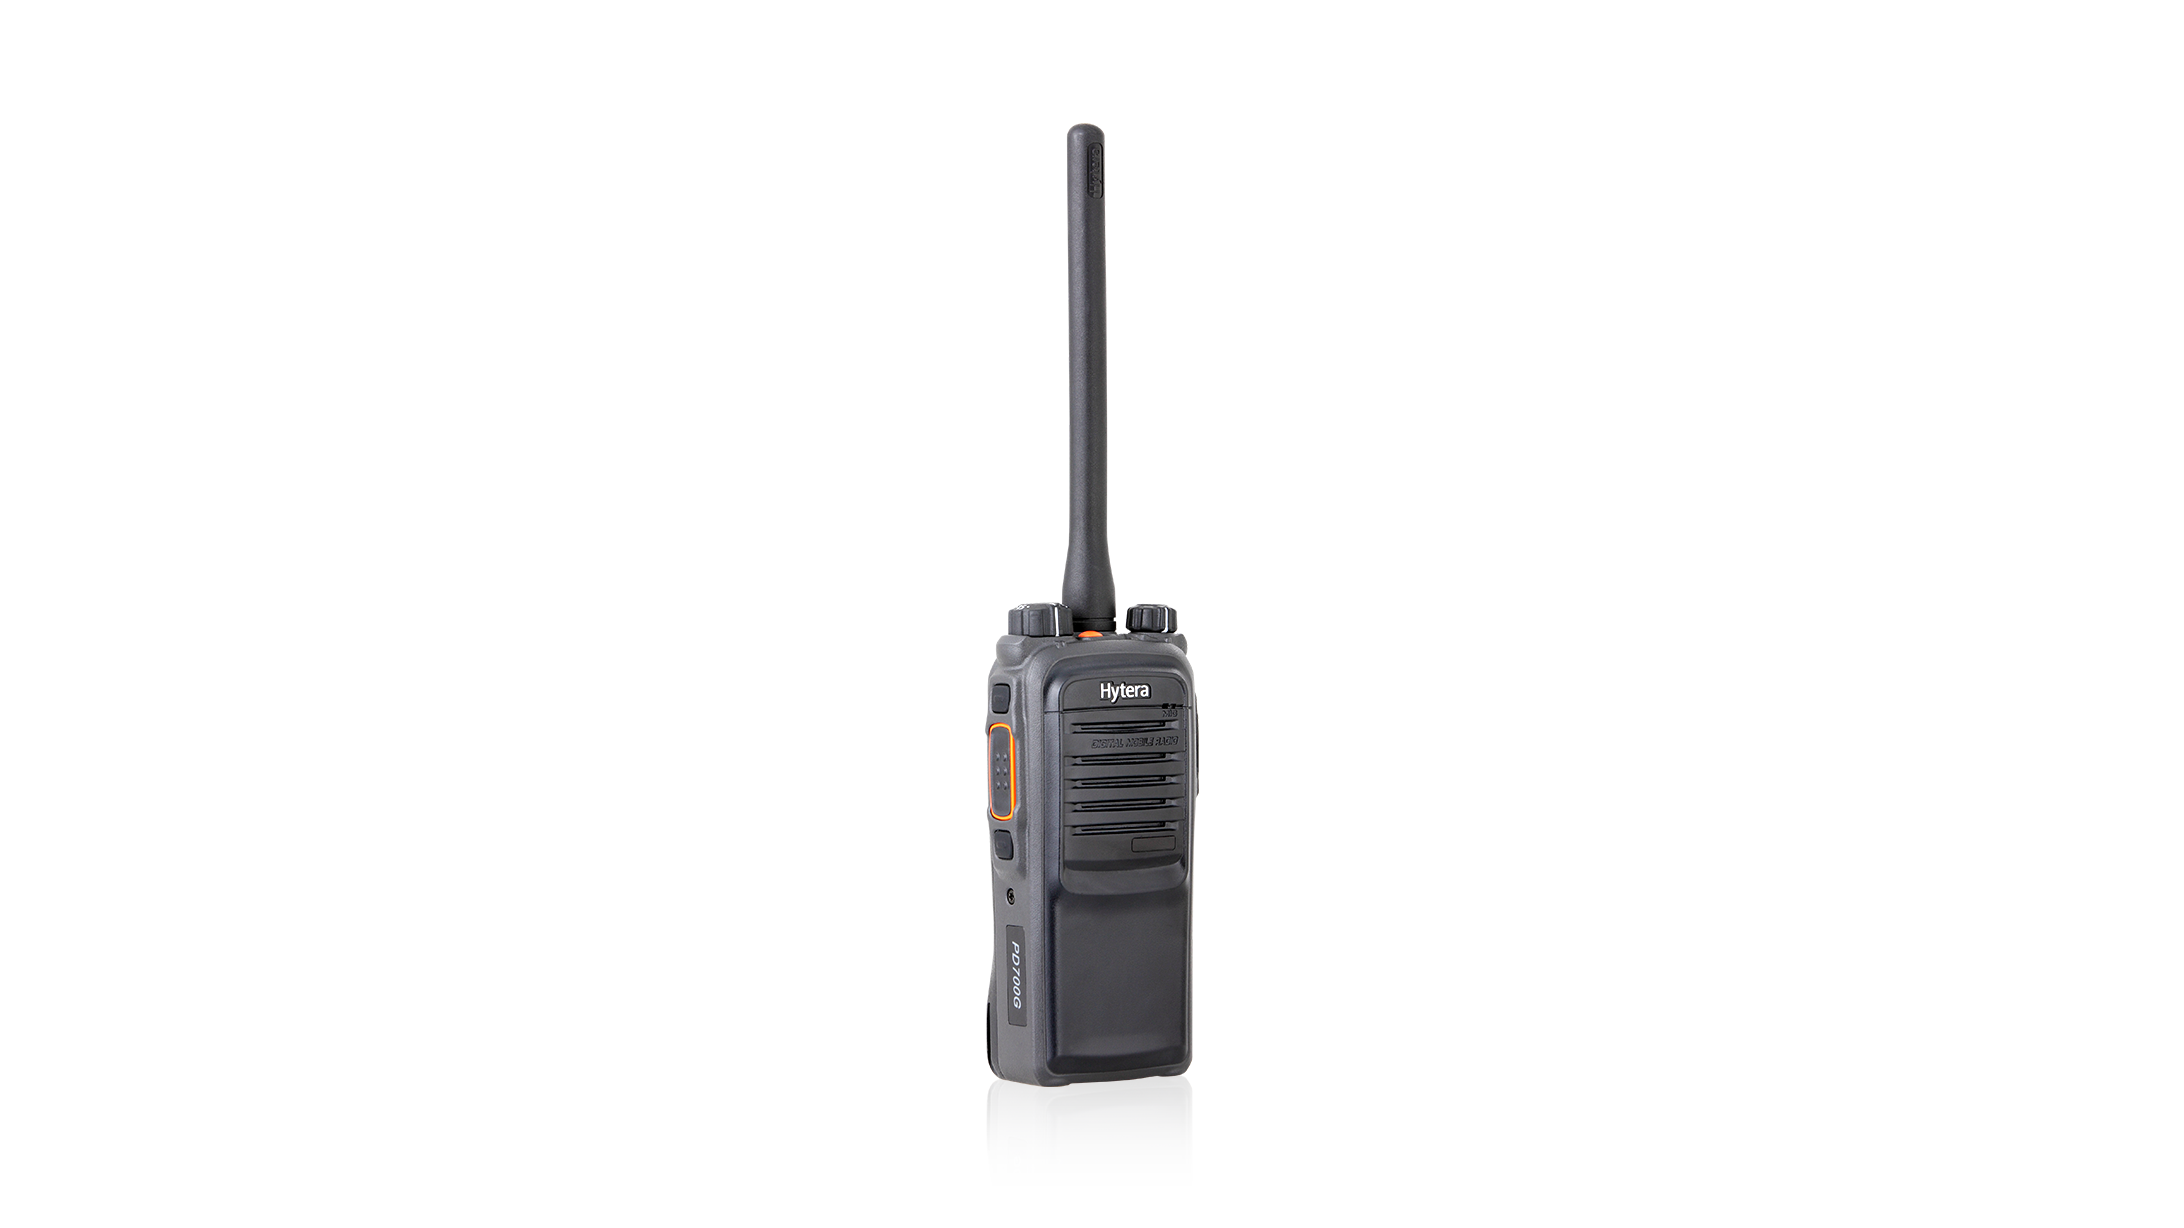 PD70X DMR Professional Digital Radio